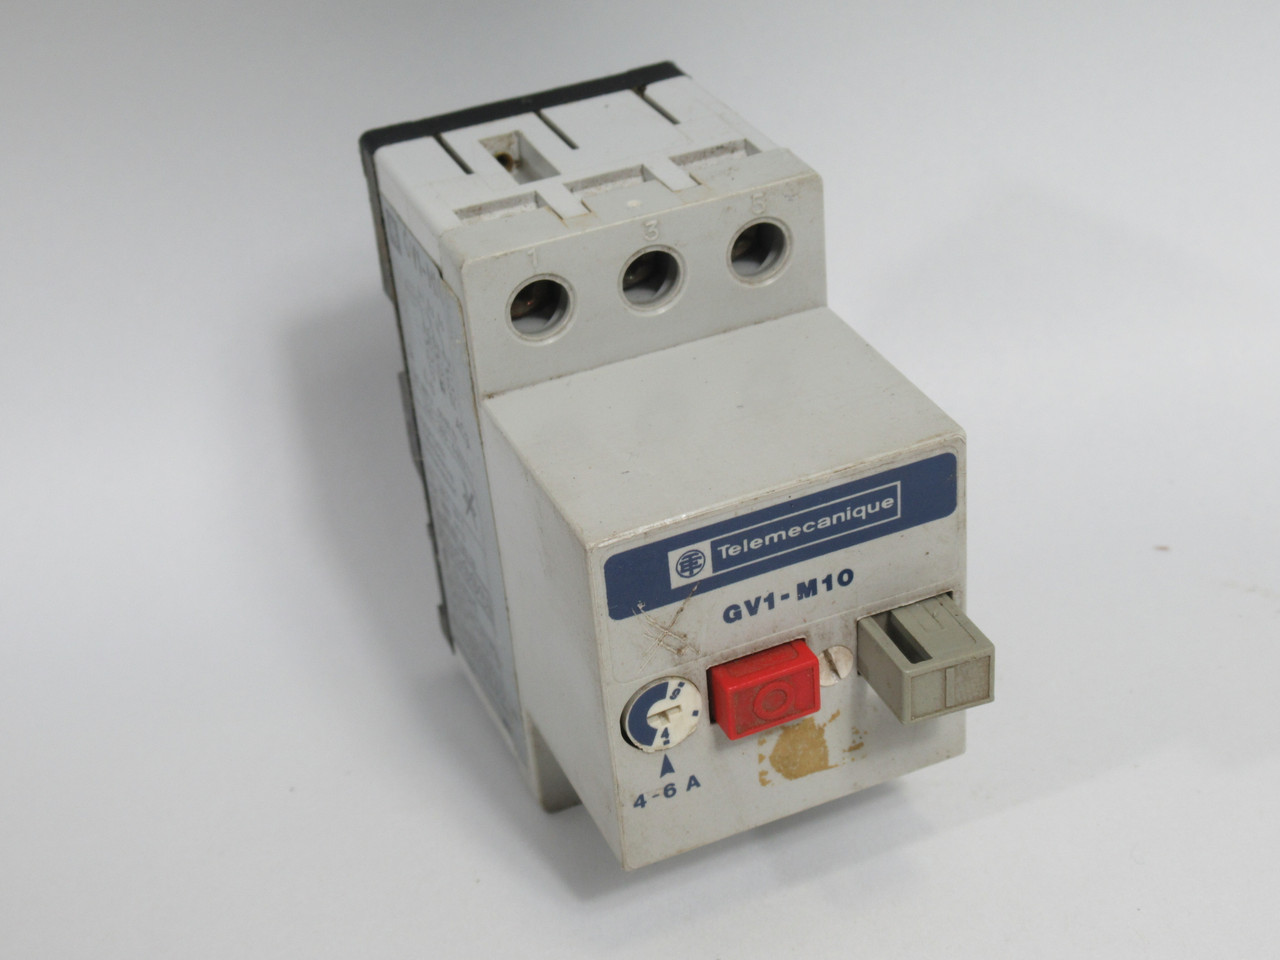 Telemecanique GV1-M10 Motor Circuit Breaker 4-6Amp USED